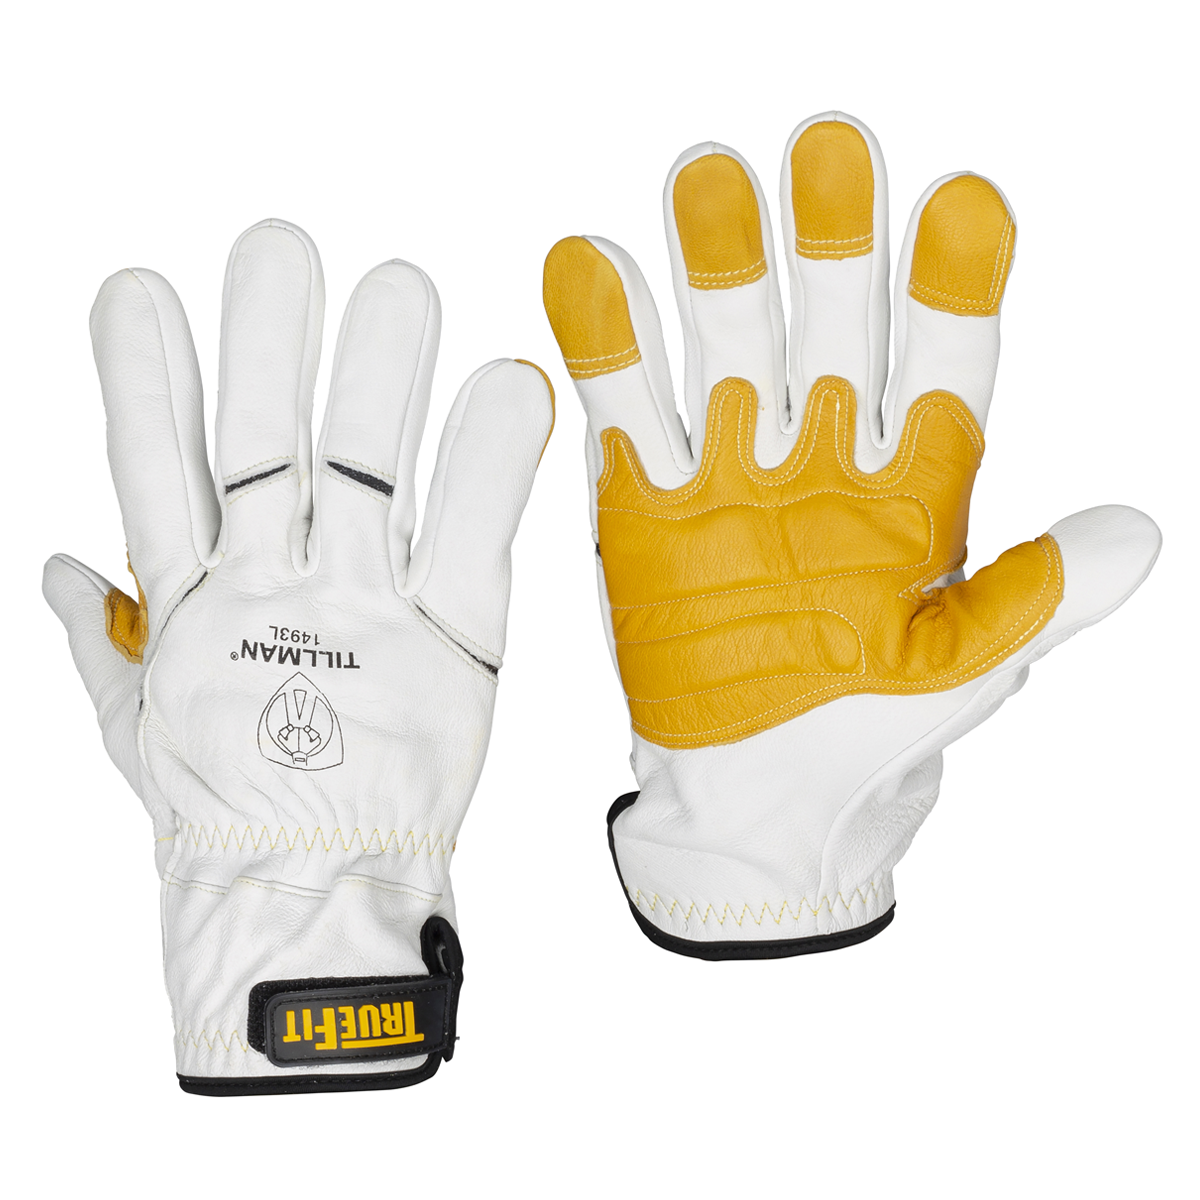 Tillman 990 14 inch Flextra Acrylic Fiberglass High Heat Glove, Left Hand Only, X-Large, Men's, Beige